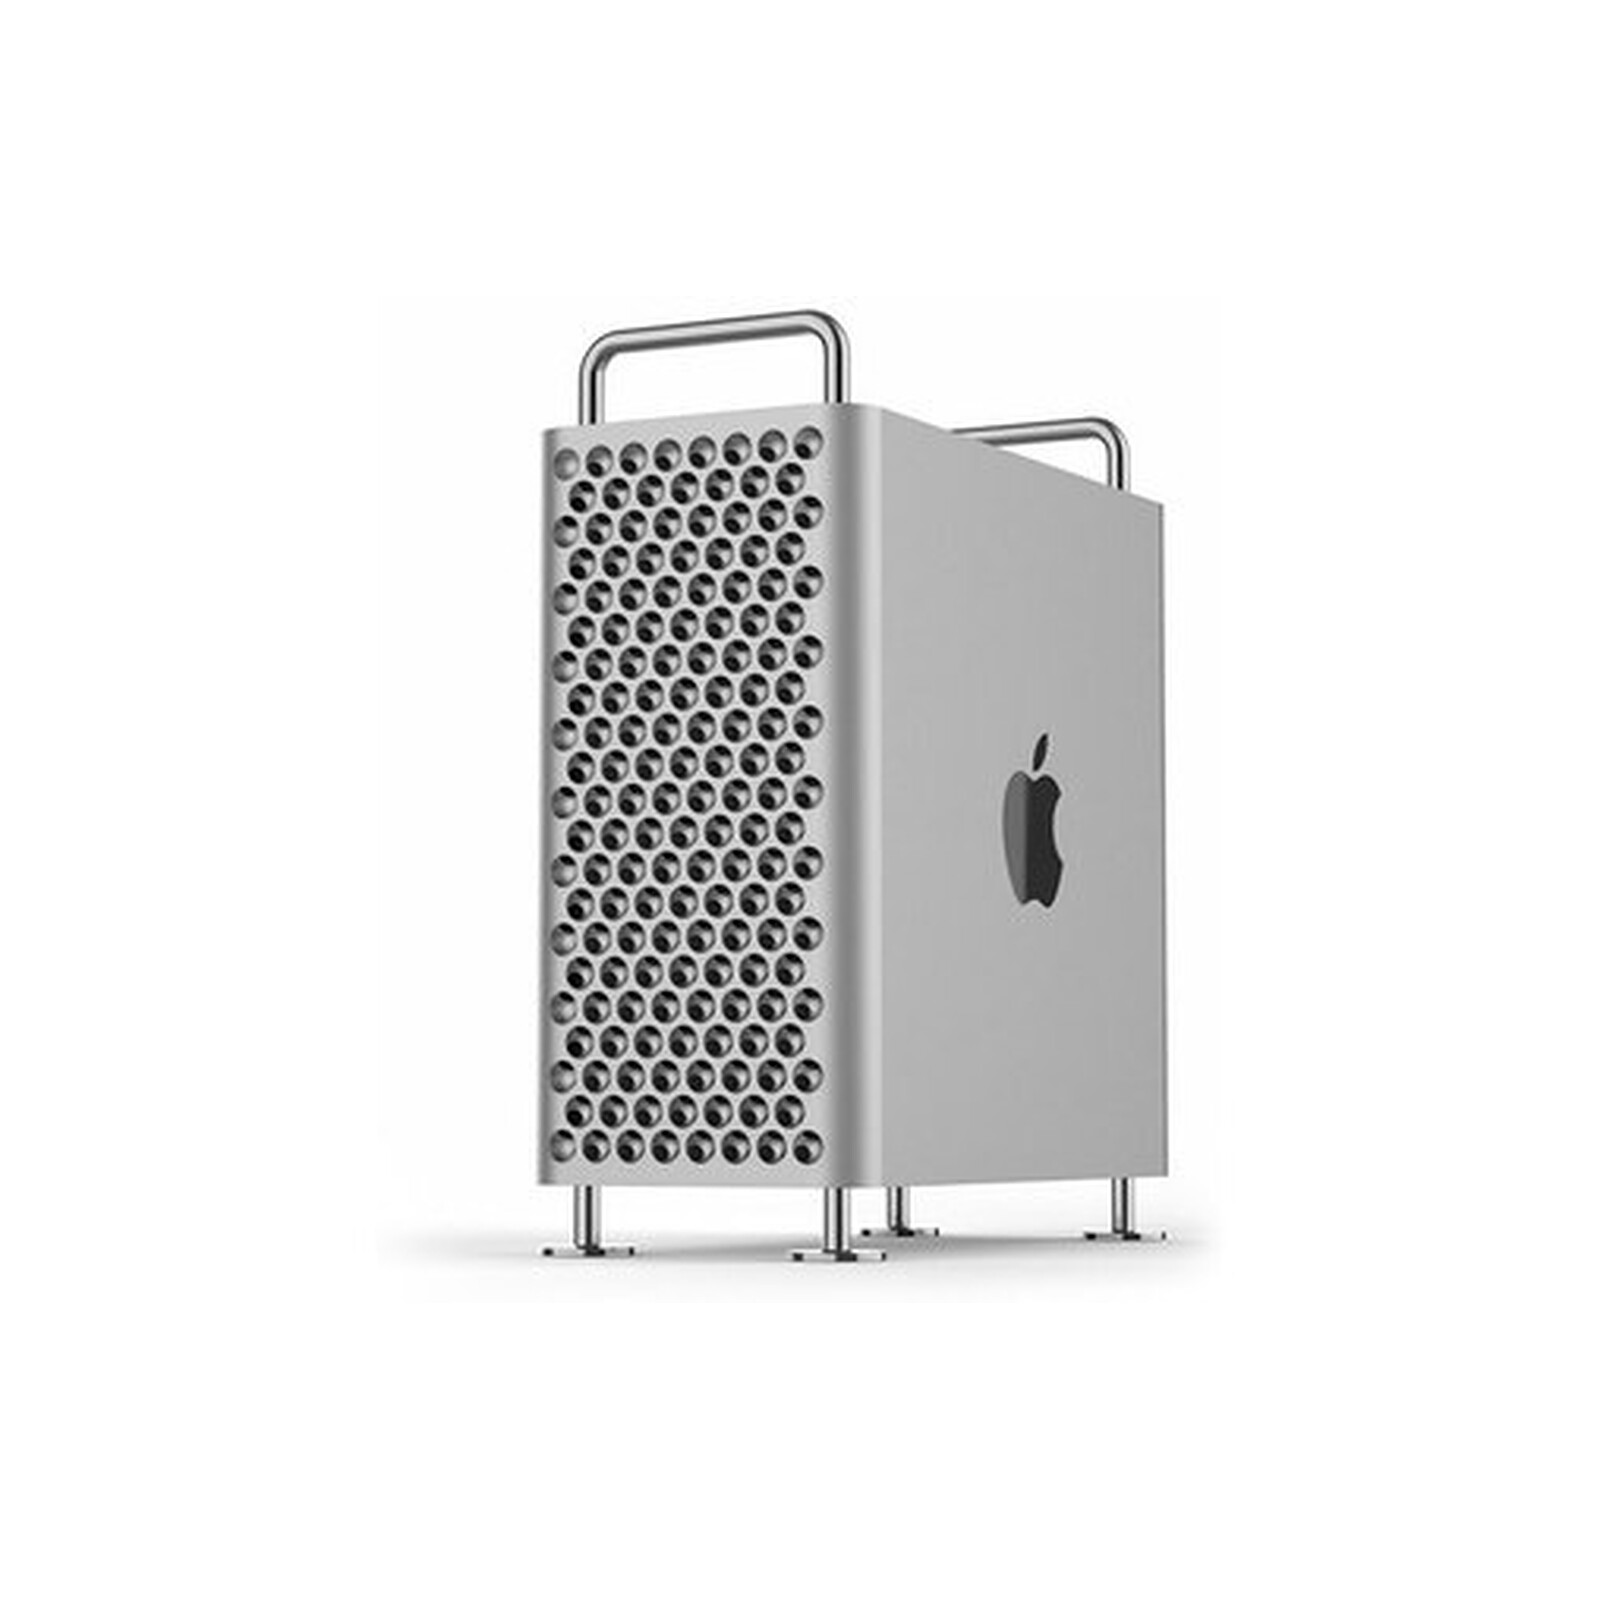 Apple iMac 27 pouces avec écran Retina 5K (MK482FN/A) - Ordinateur Mac -  Garantie 3 ans LDLC